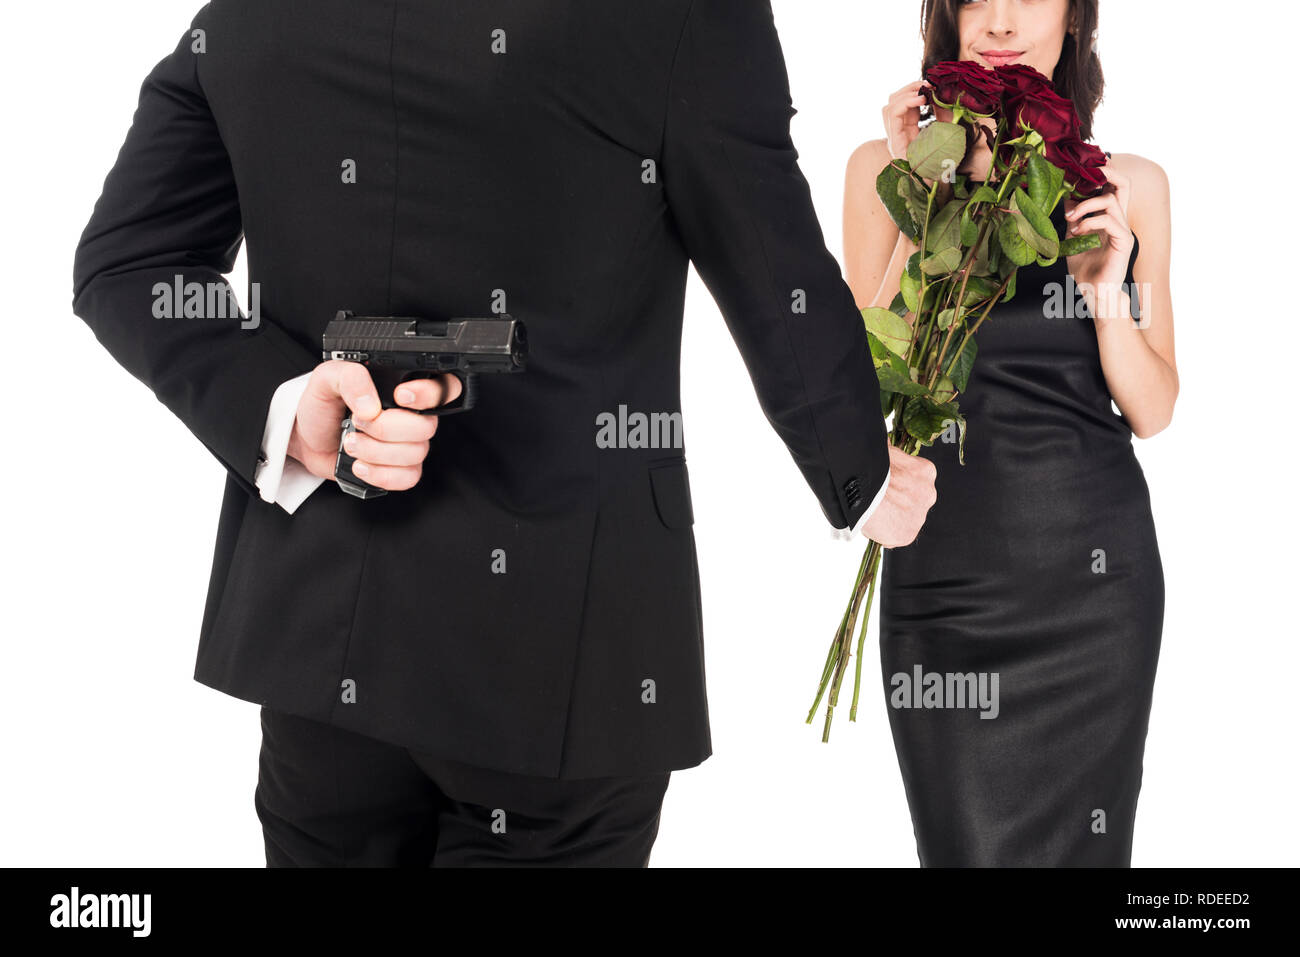 Мужчина угрожает девушку. Цветы за спиной. Мужчина с пистолетом за спиной. Держит цветы за спиной. Мужчина с оружием за спиной.